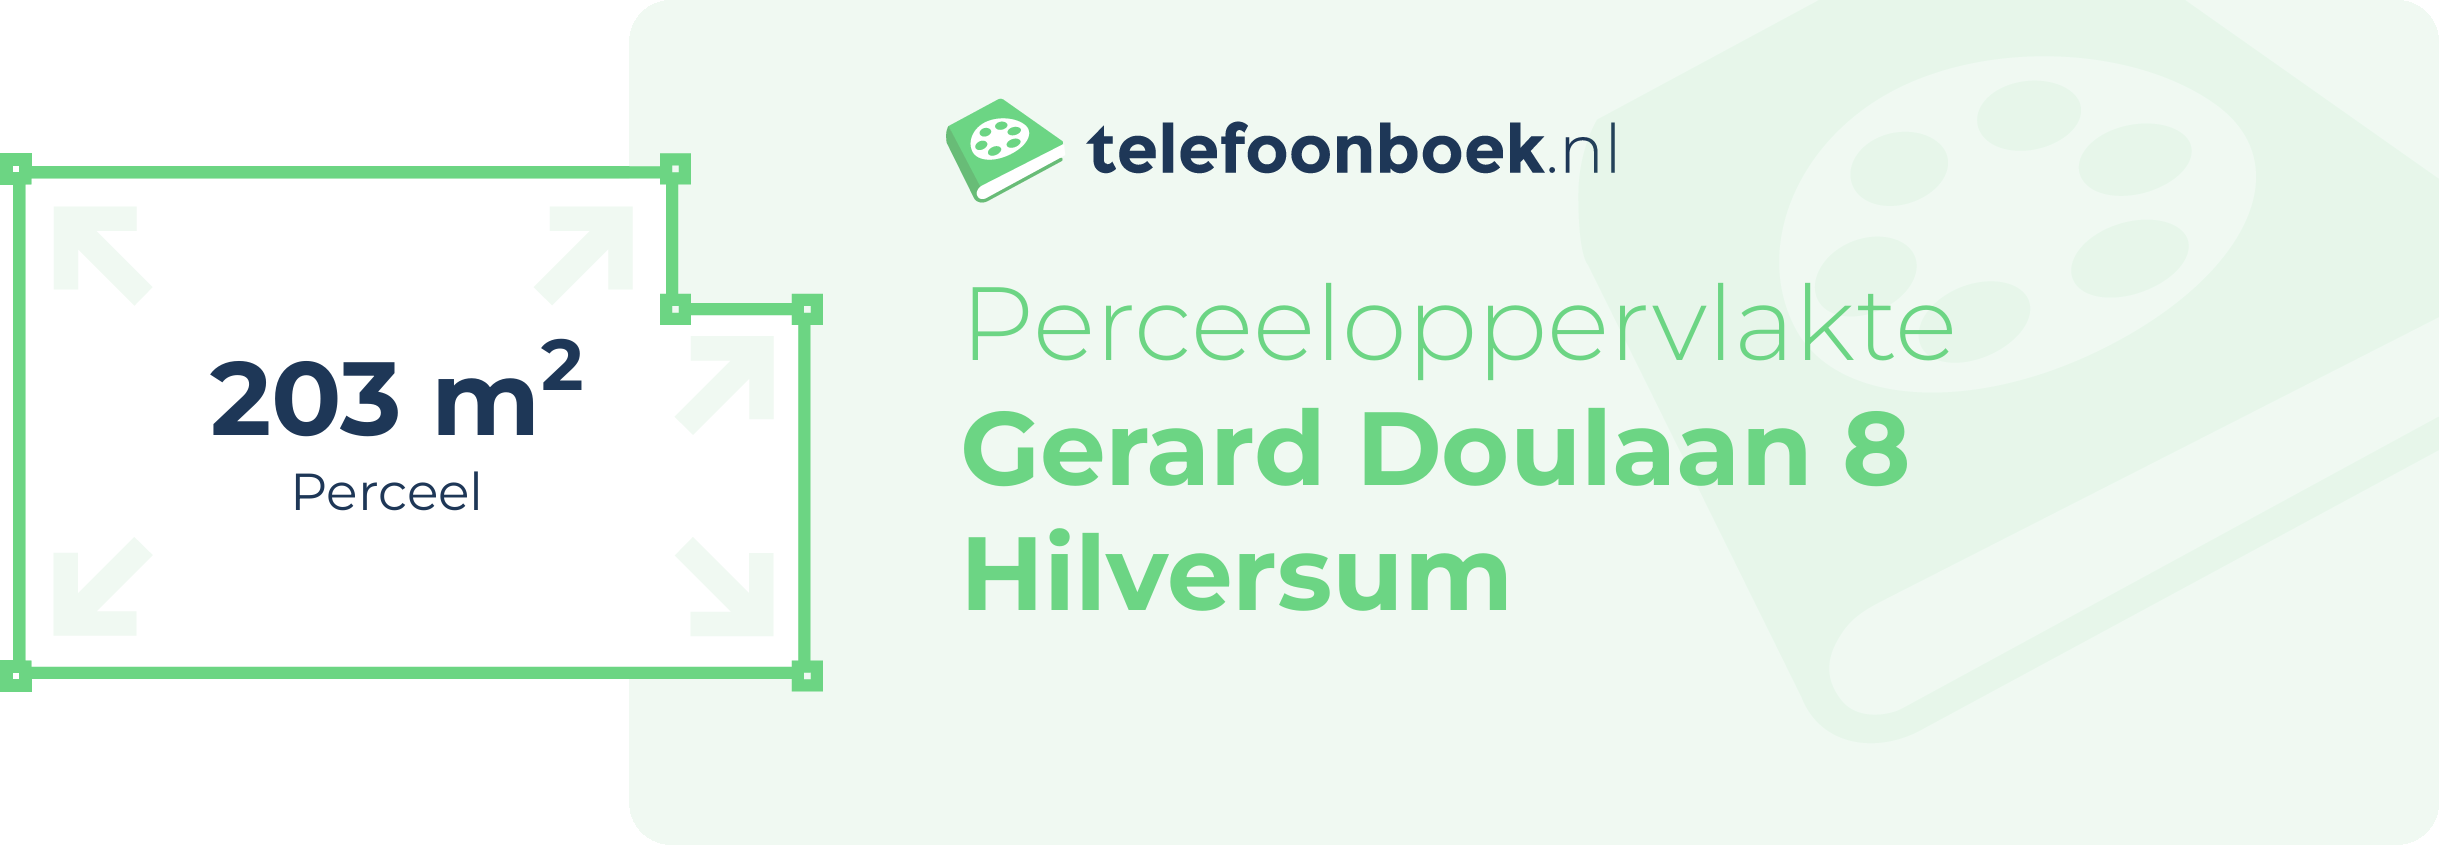 Perceeloppervlakte Gerard Doulaan 8 Hilversum